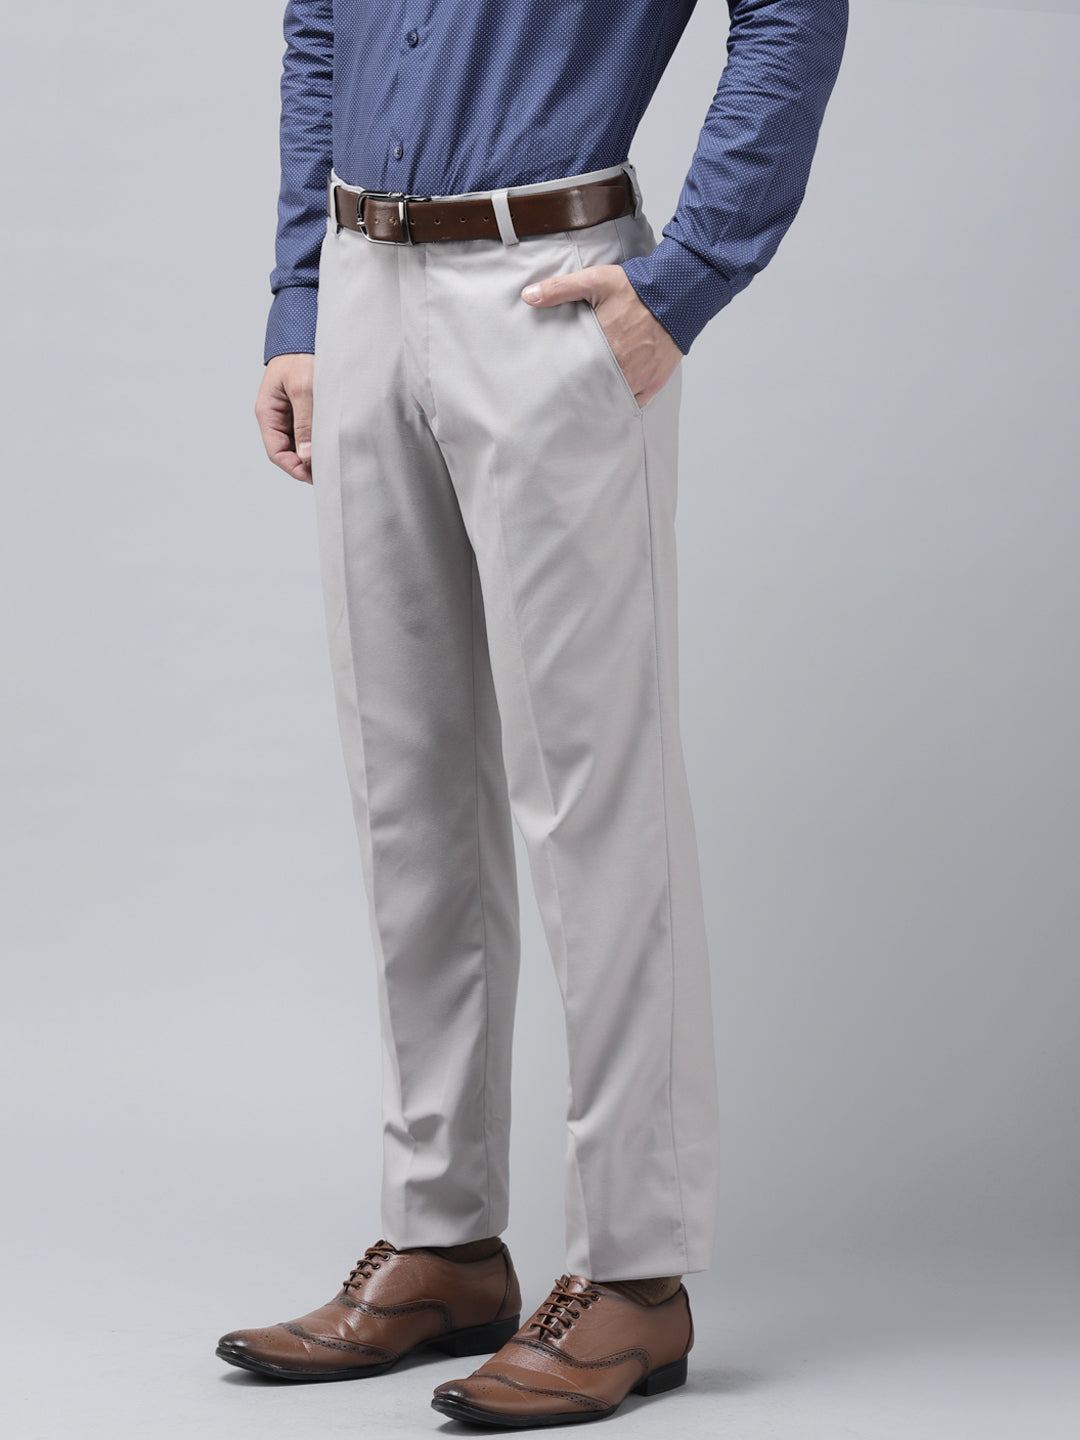 4Pcs Kids Boys Gentleman Suit Coat+Shirt+Tie+ Pants Party Formal Clothes  Set | eBay